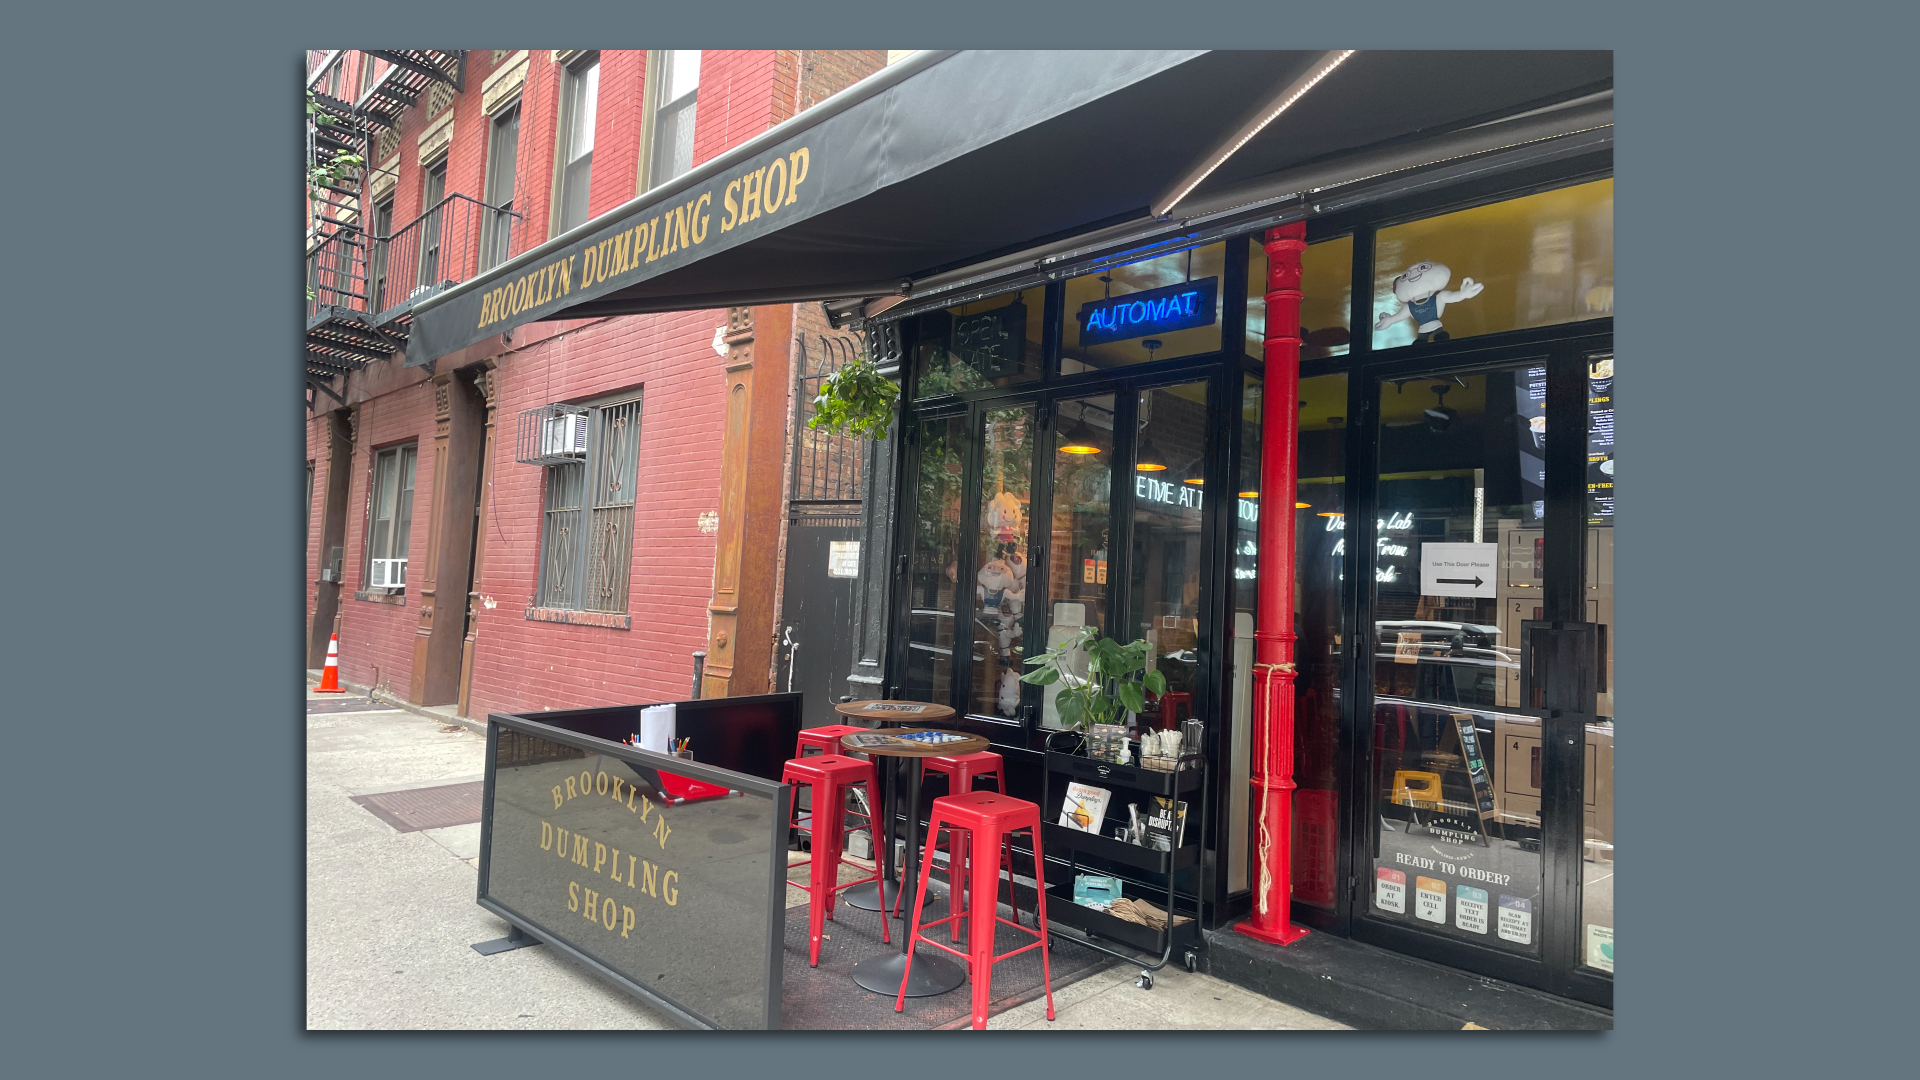 The exterior of the Brooklyn Dumpling Shop, an automat restaurant.